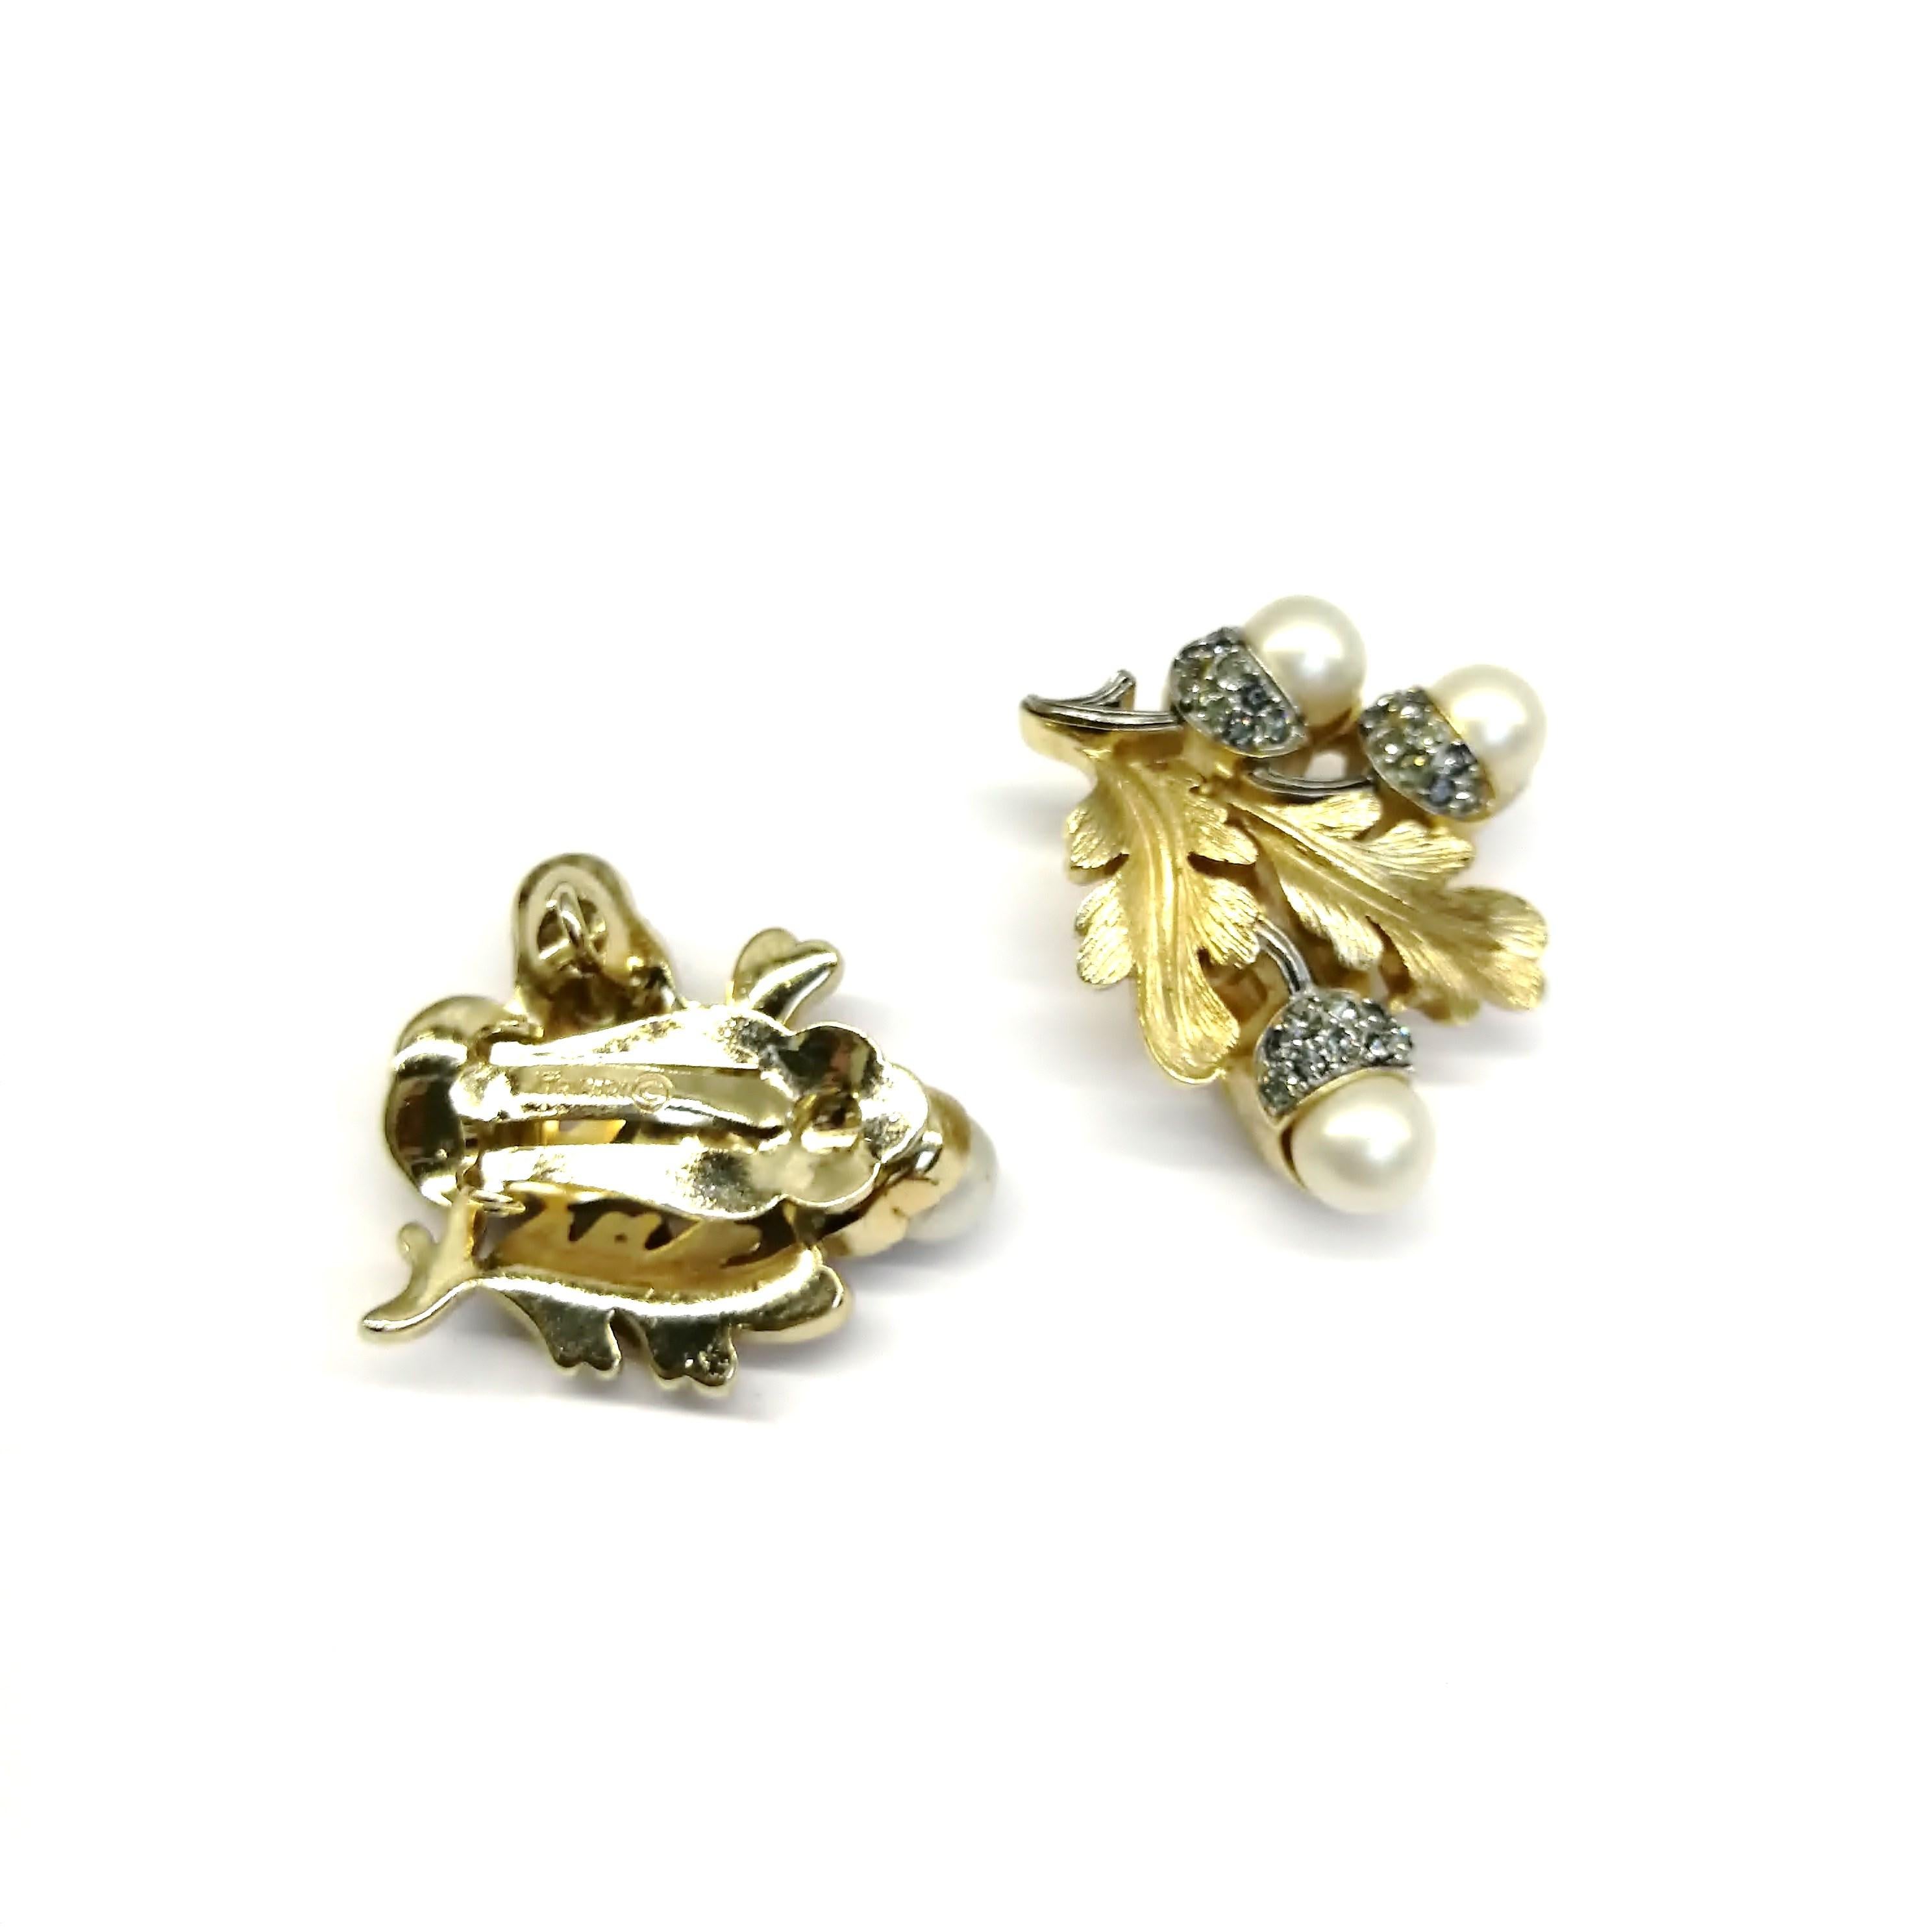 Grey paste and pearl 'acorn' earrings, Trifari, 1950s 1